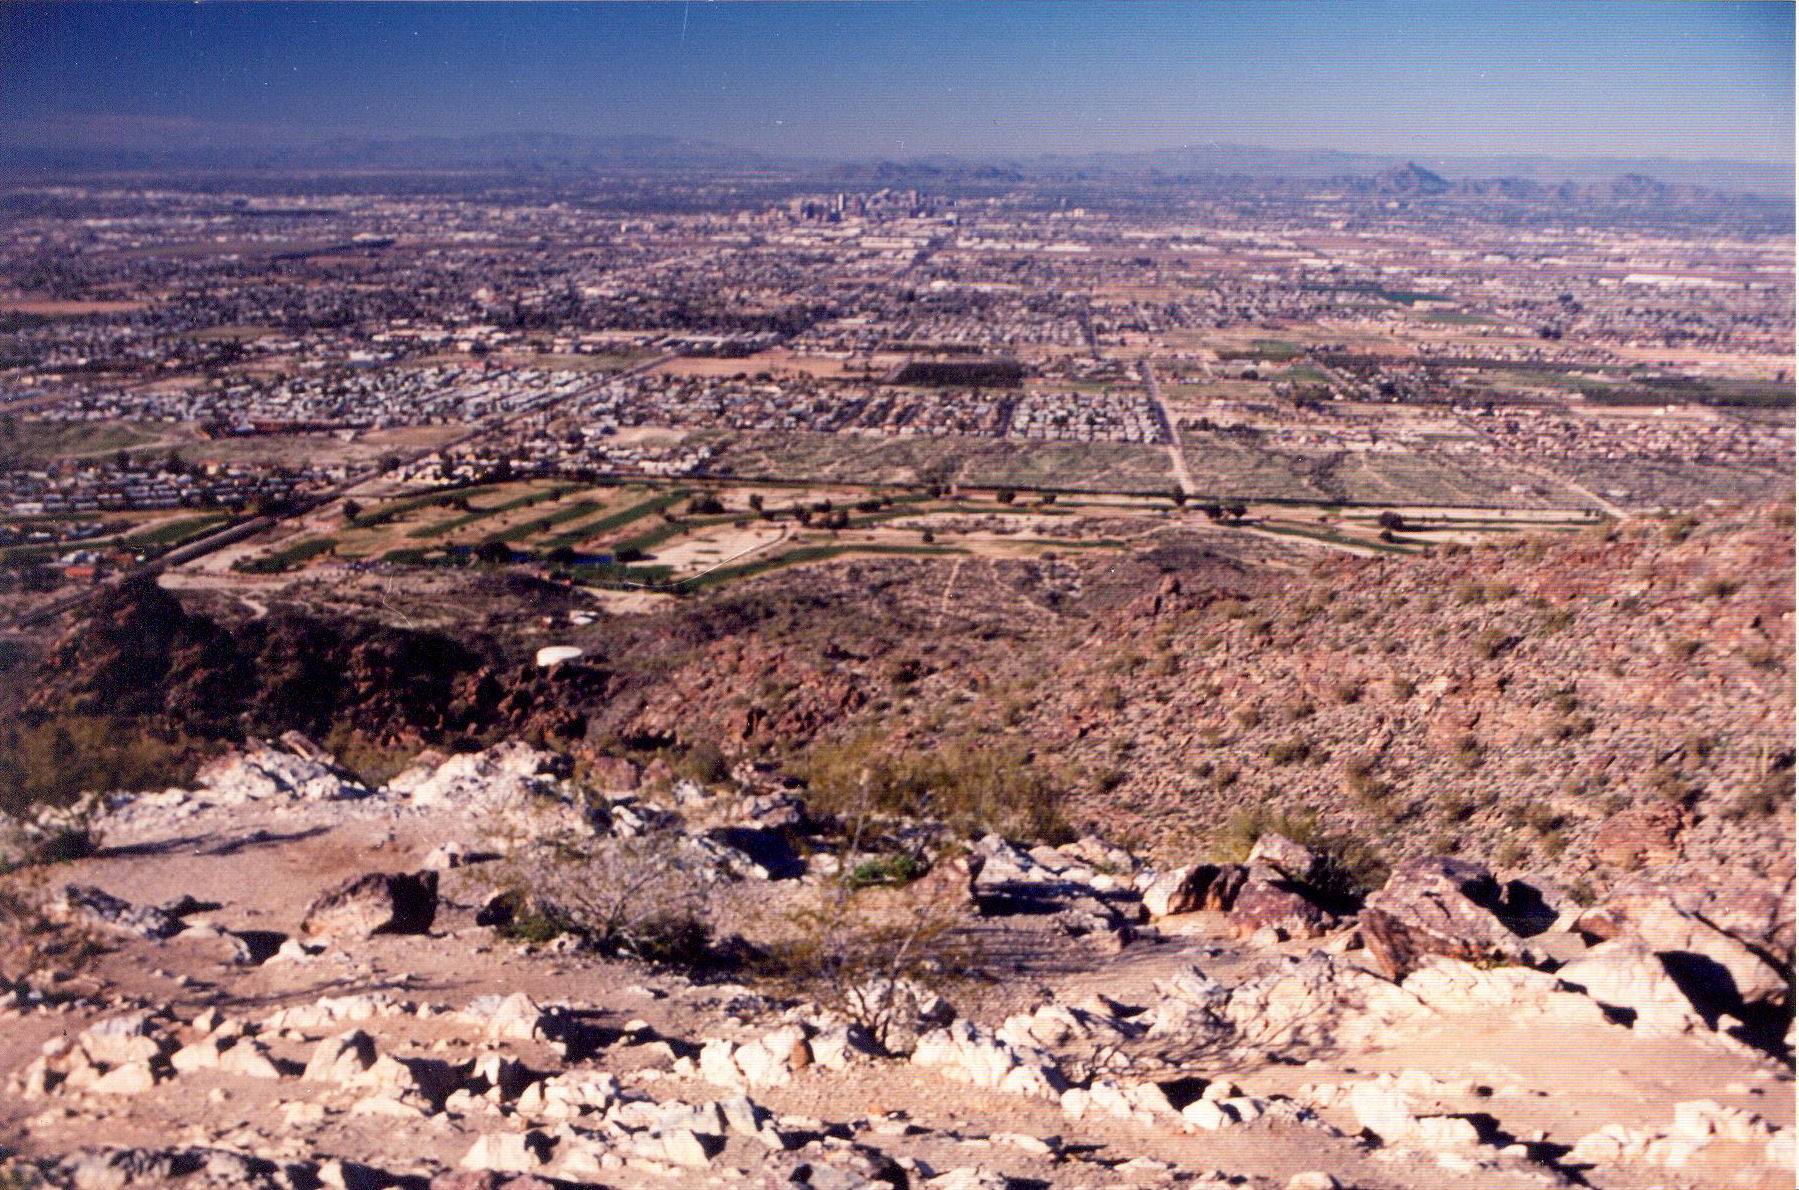 Ahwatukee Foothills Village, Phoenix, AZ, USA - panoramio.jpg